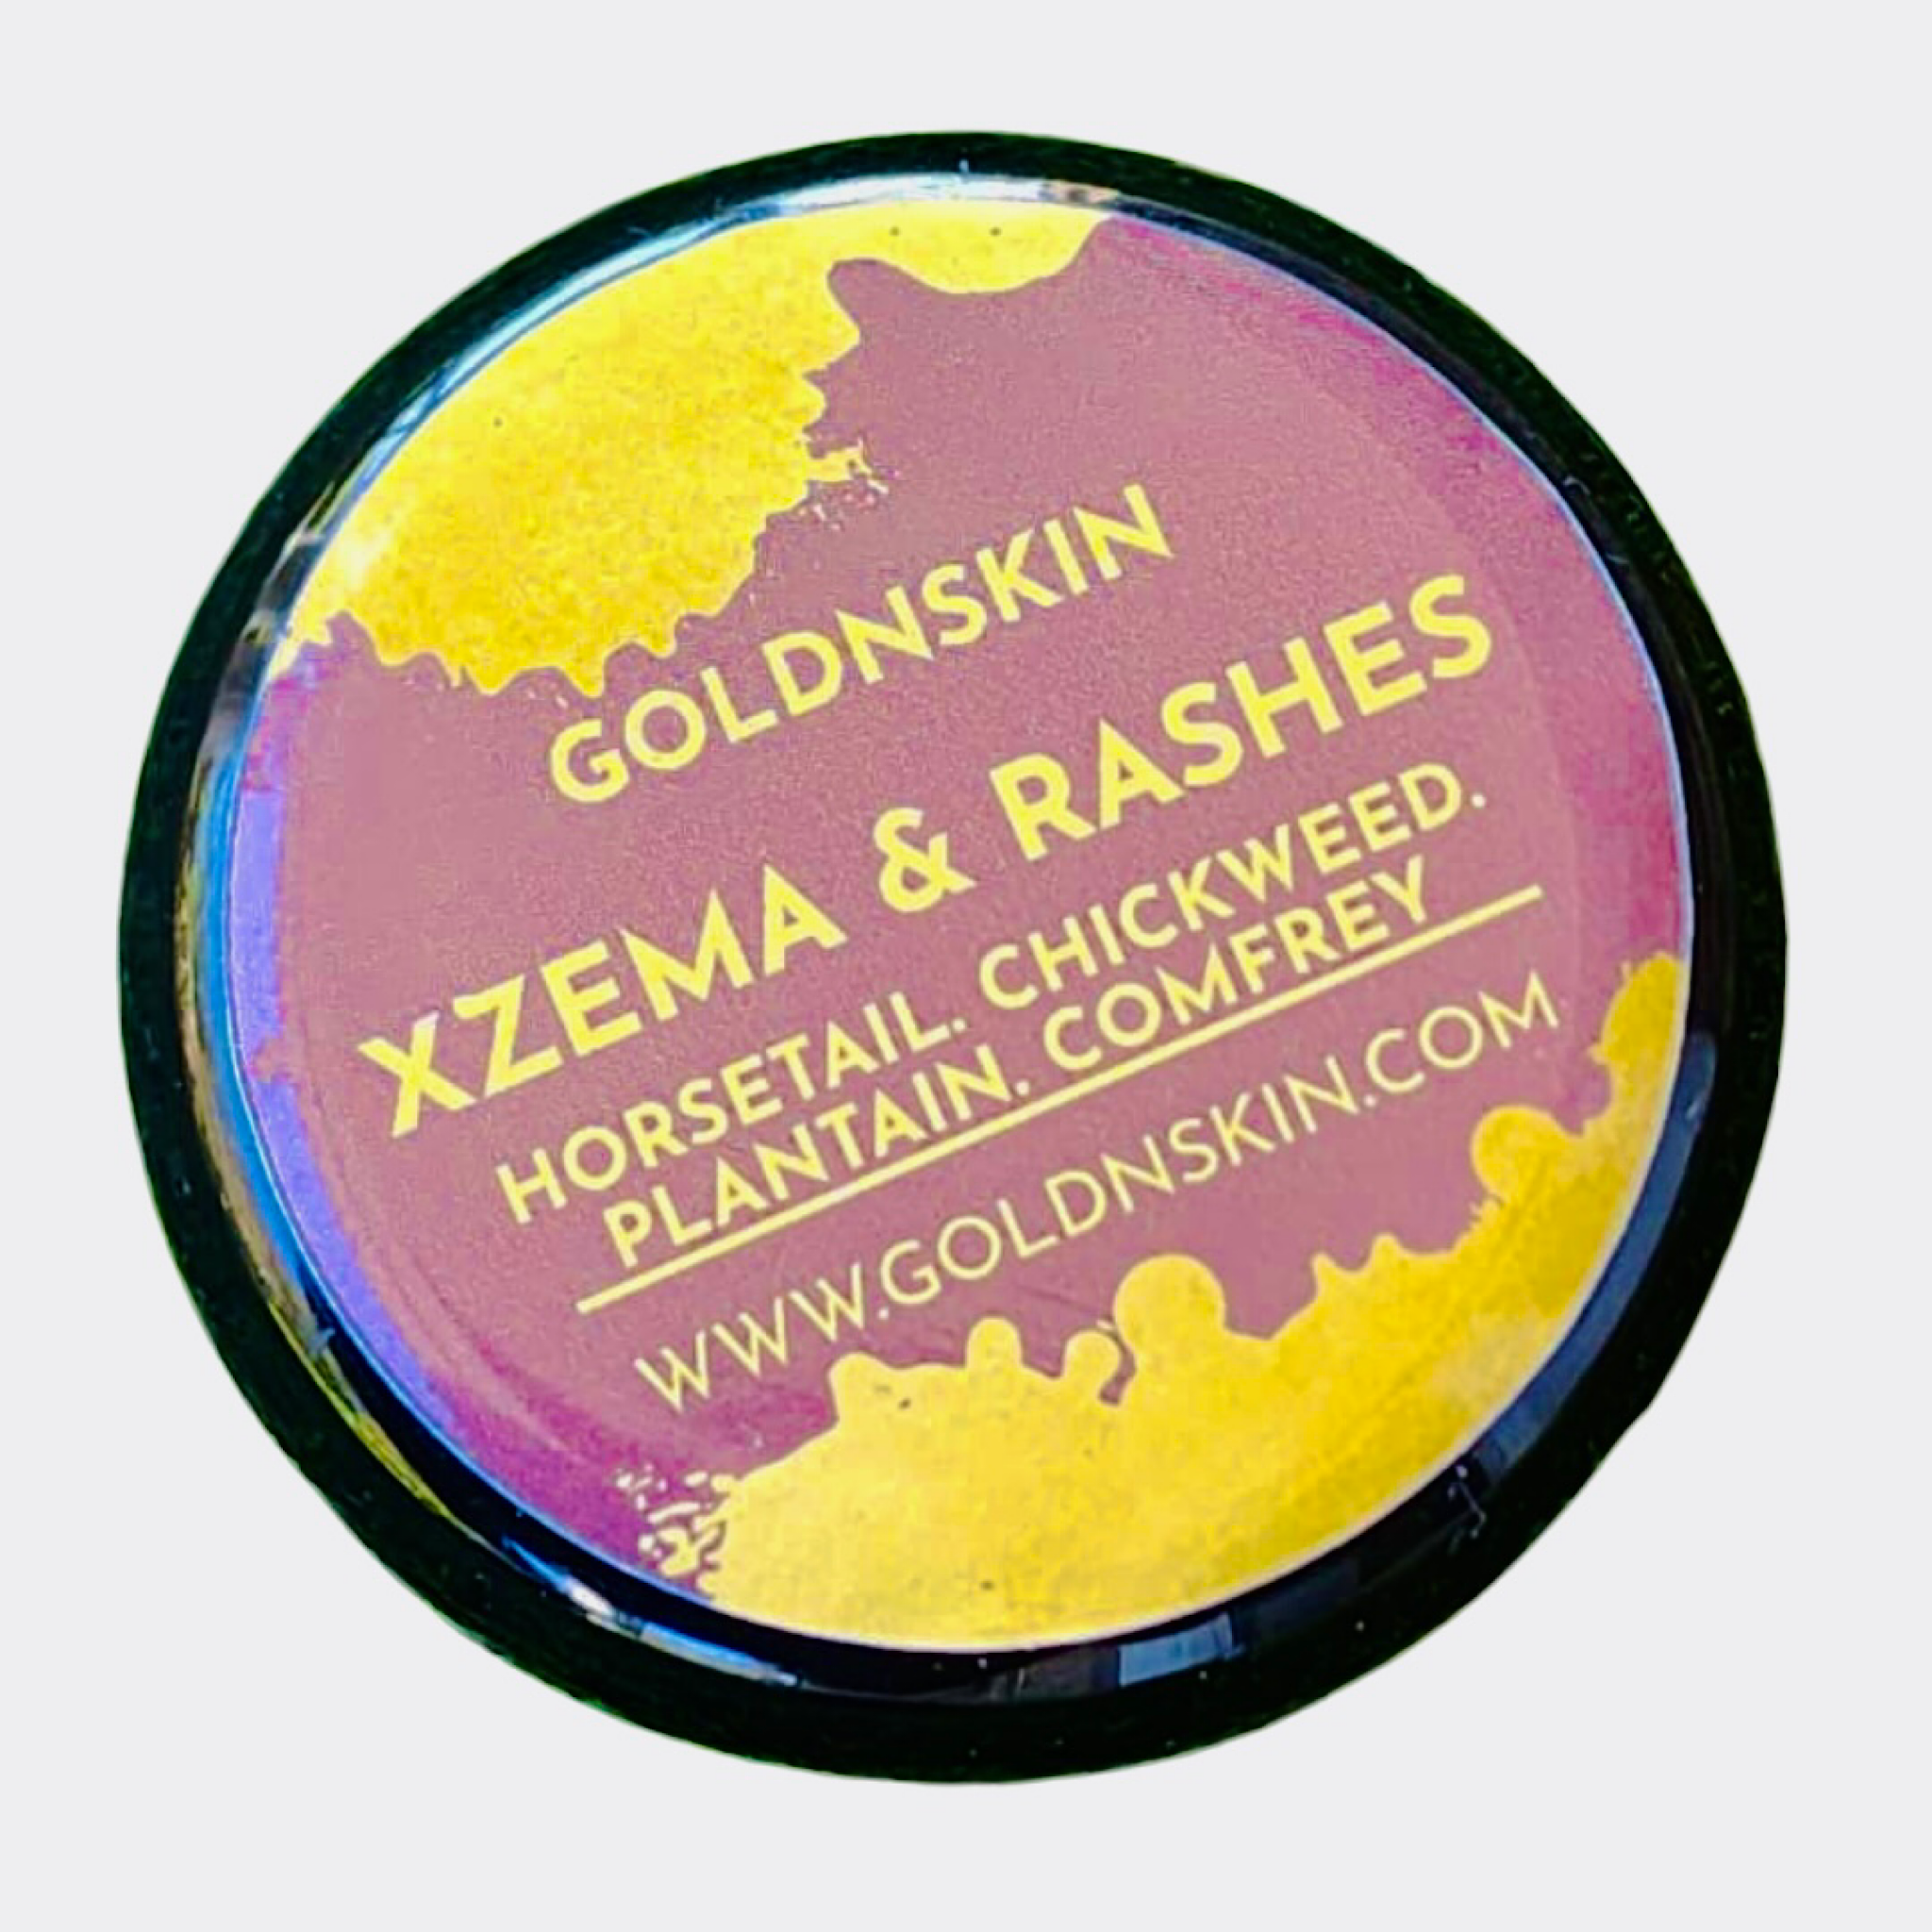 X-zema & Rash Soothing Cream